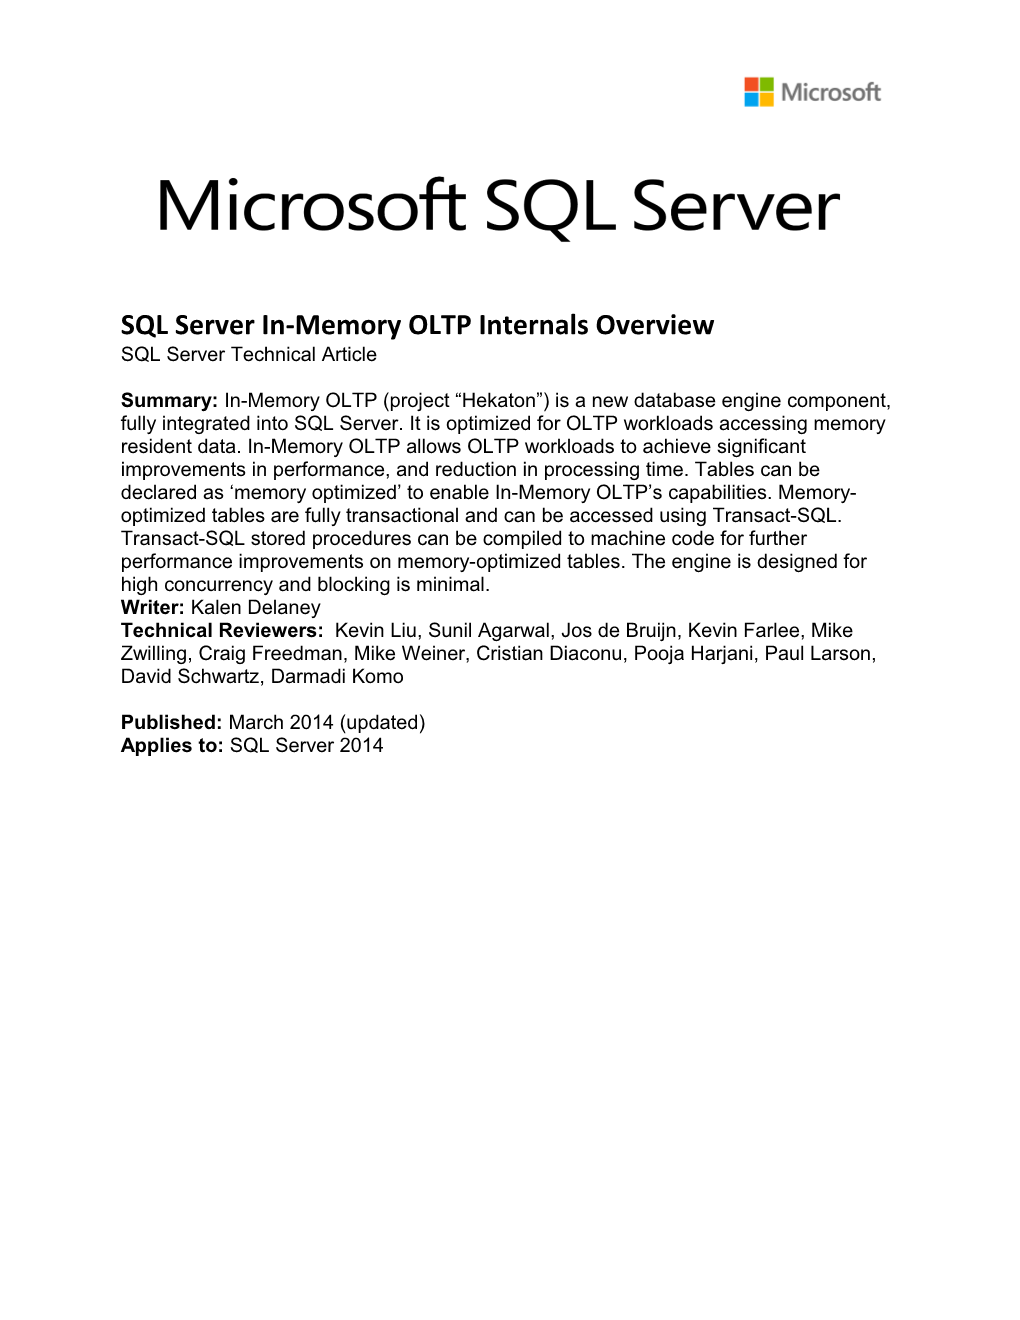 SQL Server 2014 In-Memory OLTP TDM White Paper